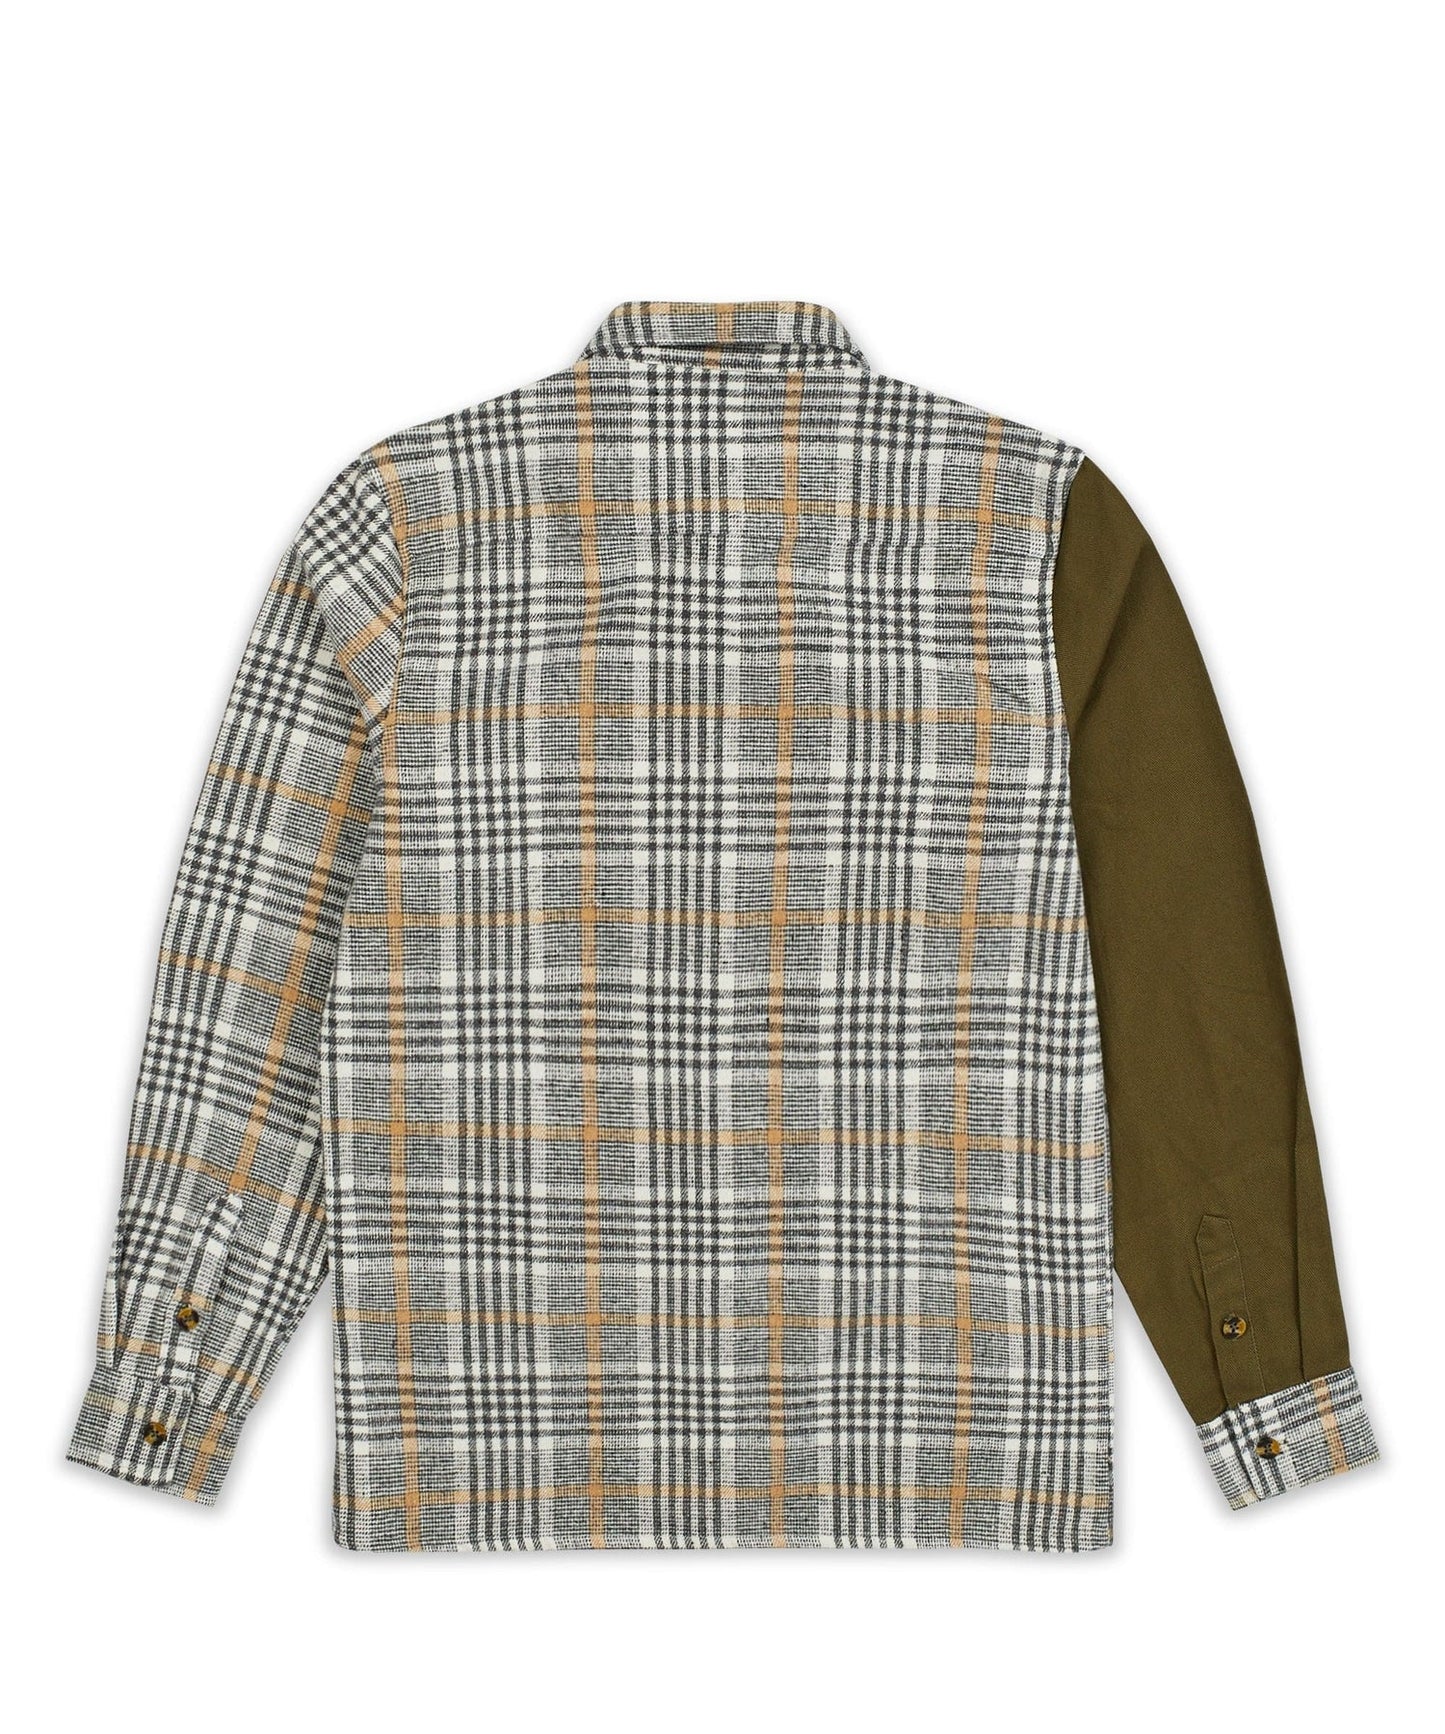 REASON Colorblock Plaid Olive Sleeve Overshirt